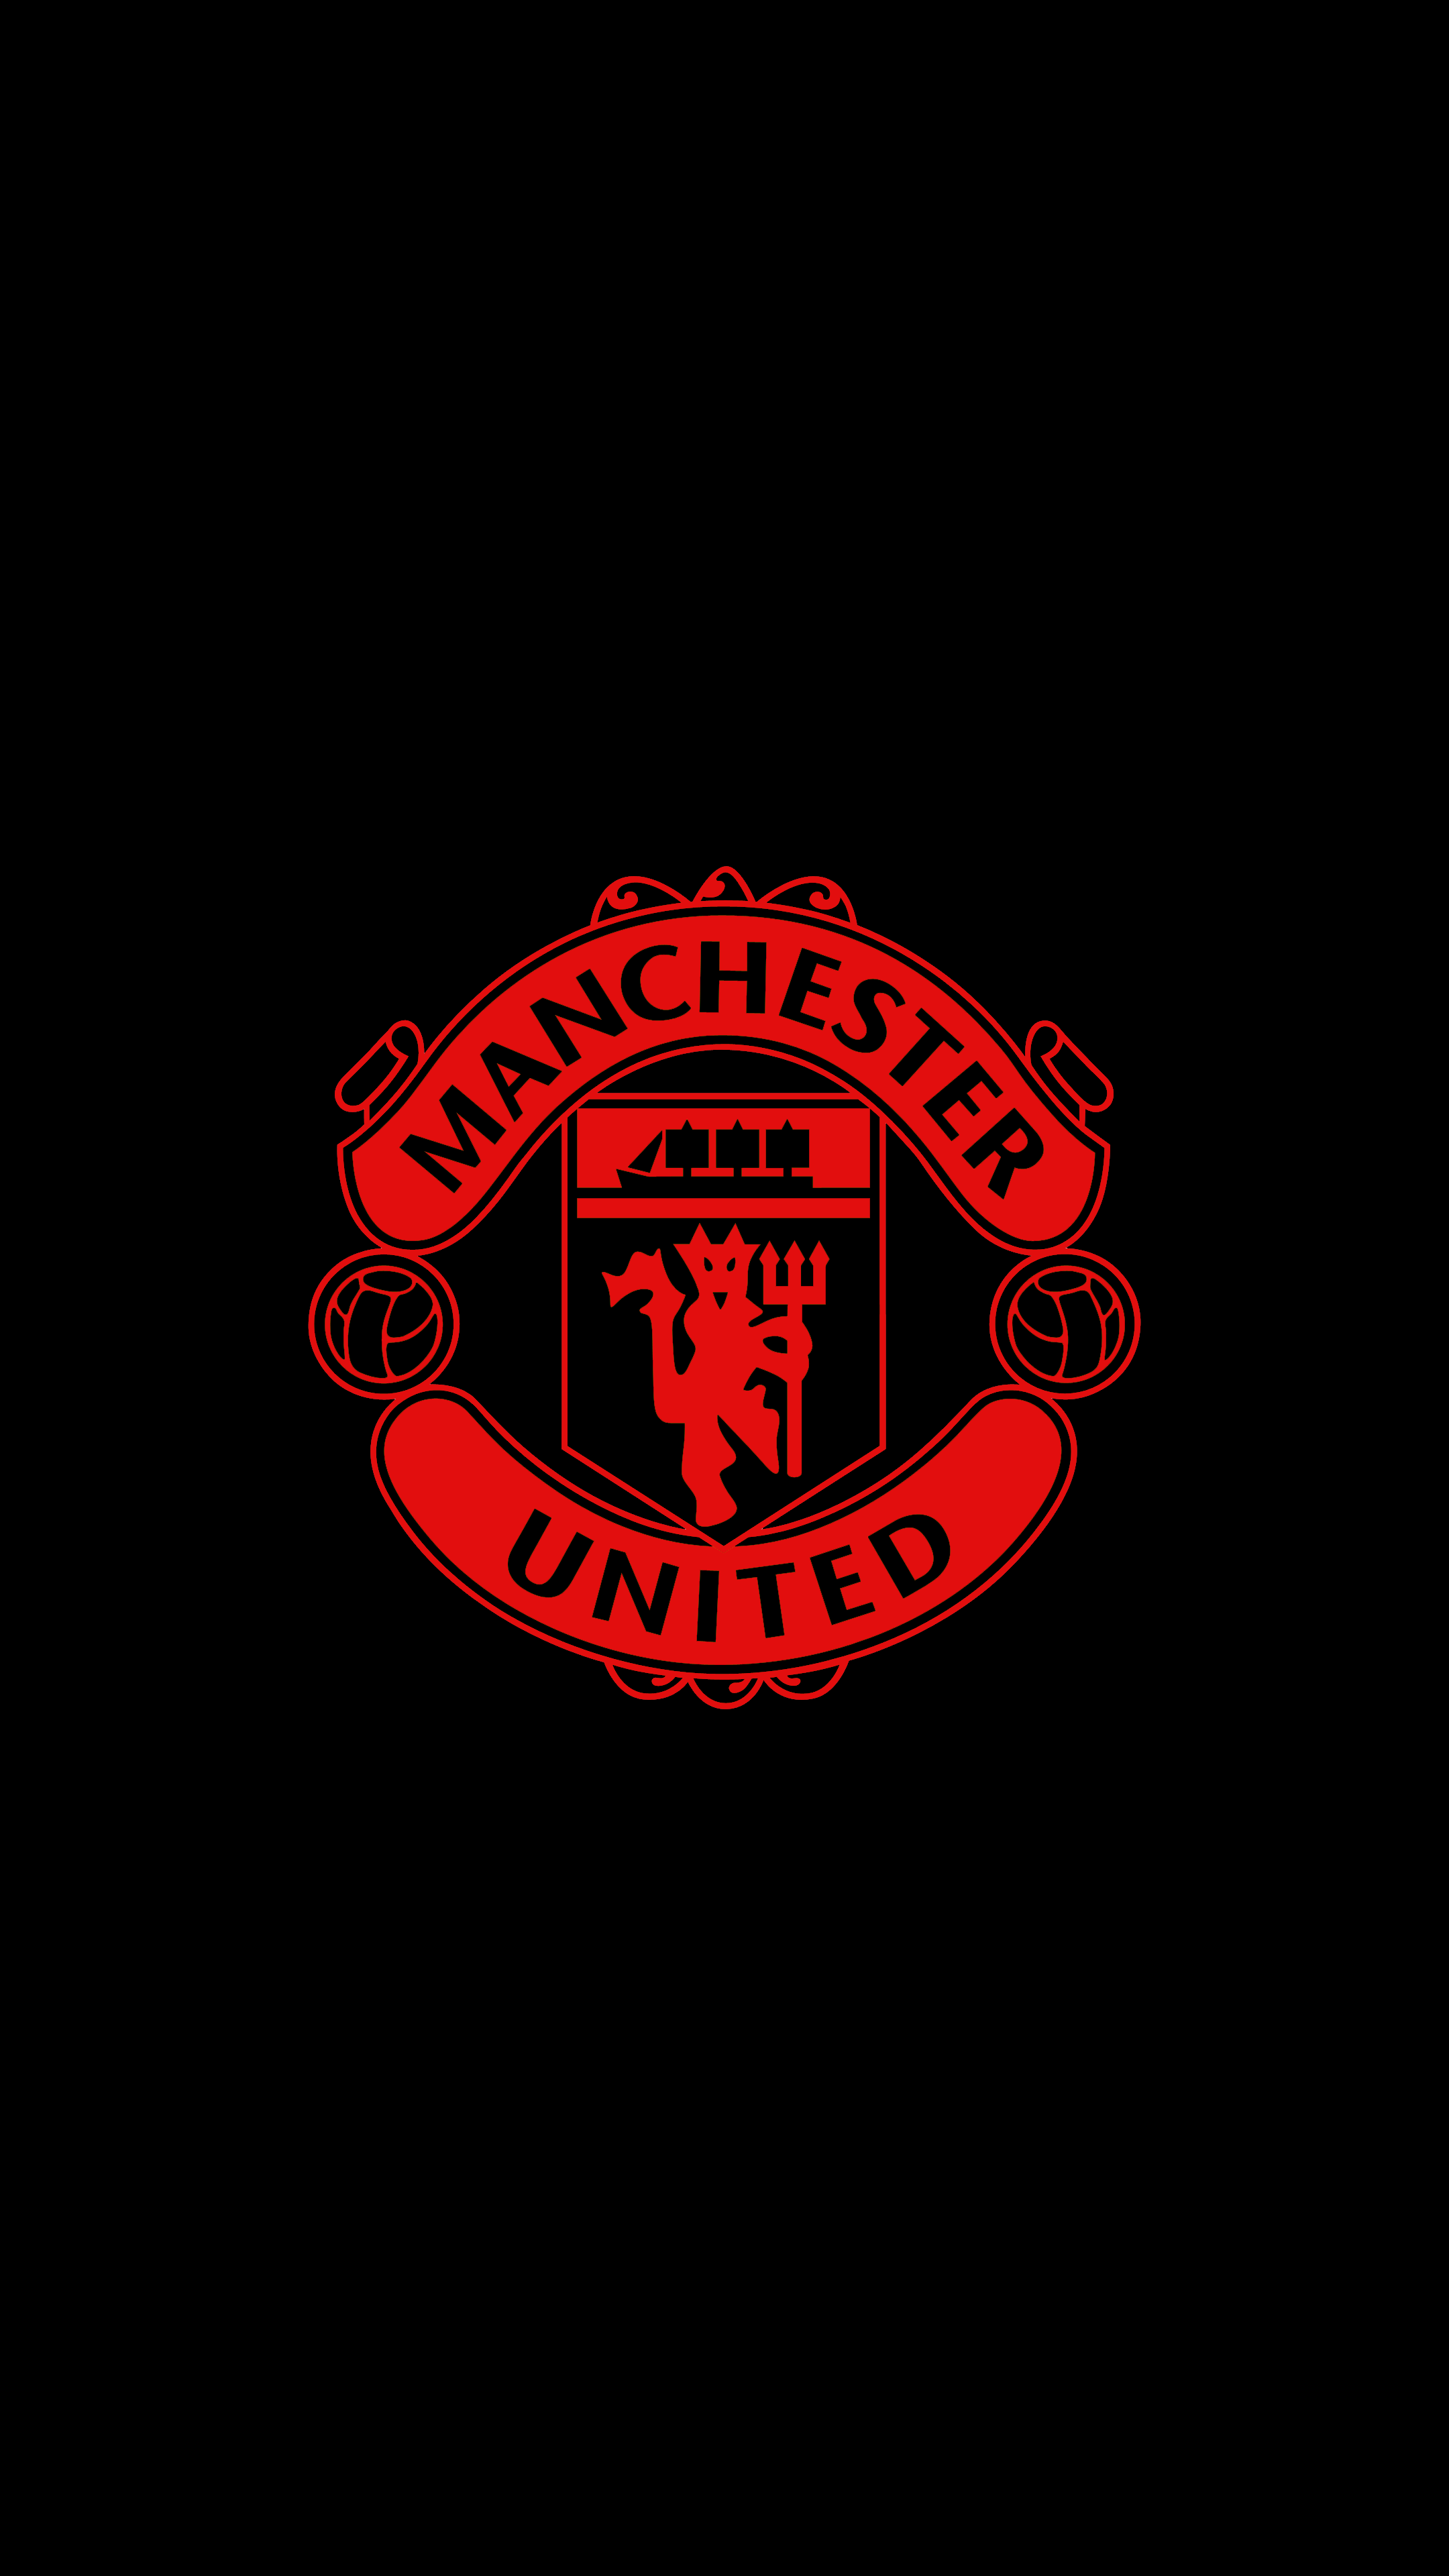 Manchester United 4K Wallpaper. Sepak bola, Pemain sepak bola, Gambar sepak bola